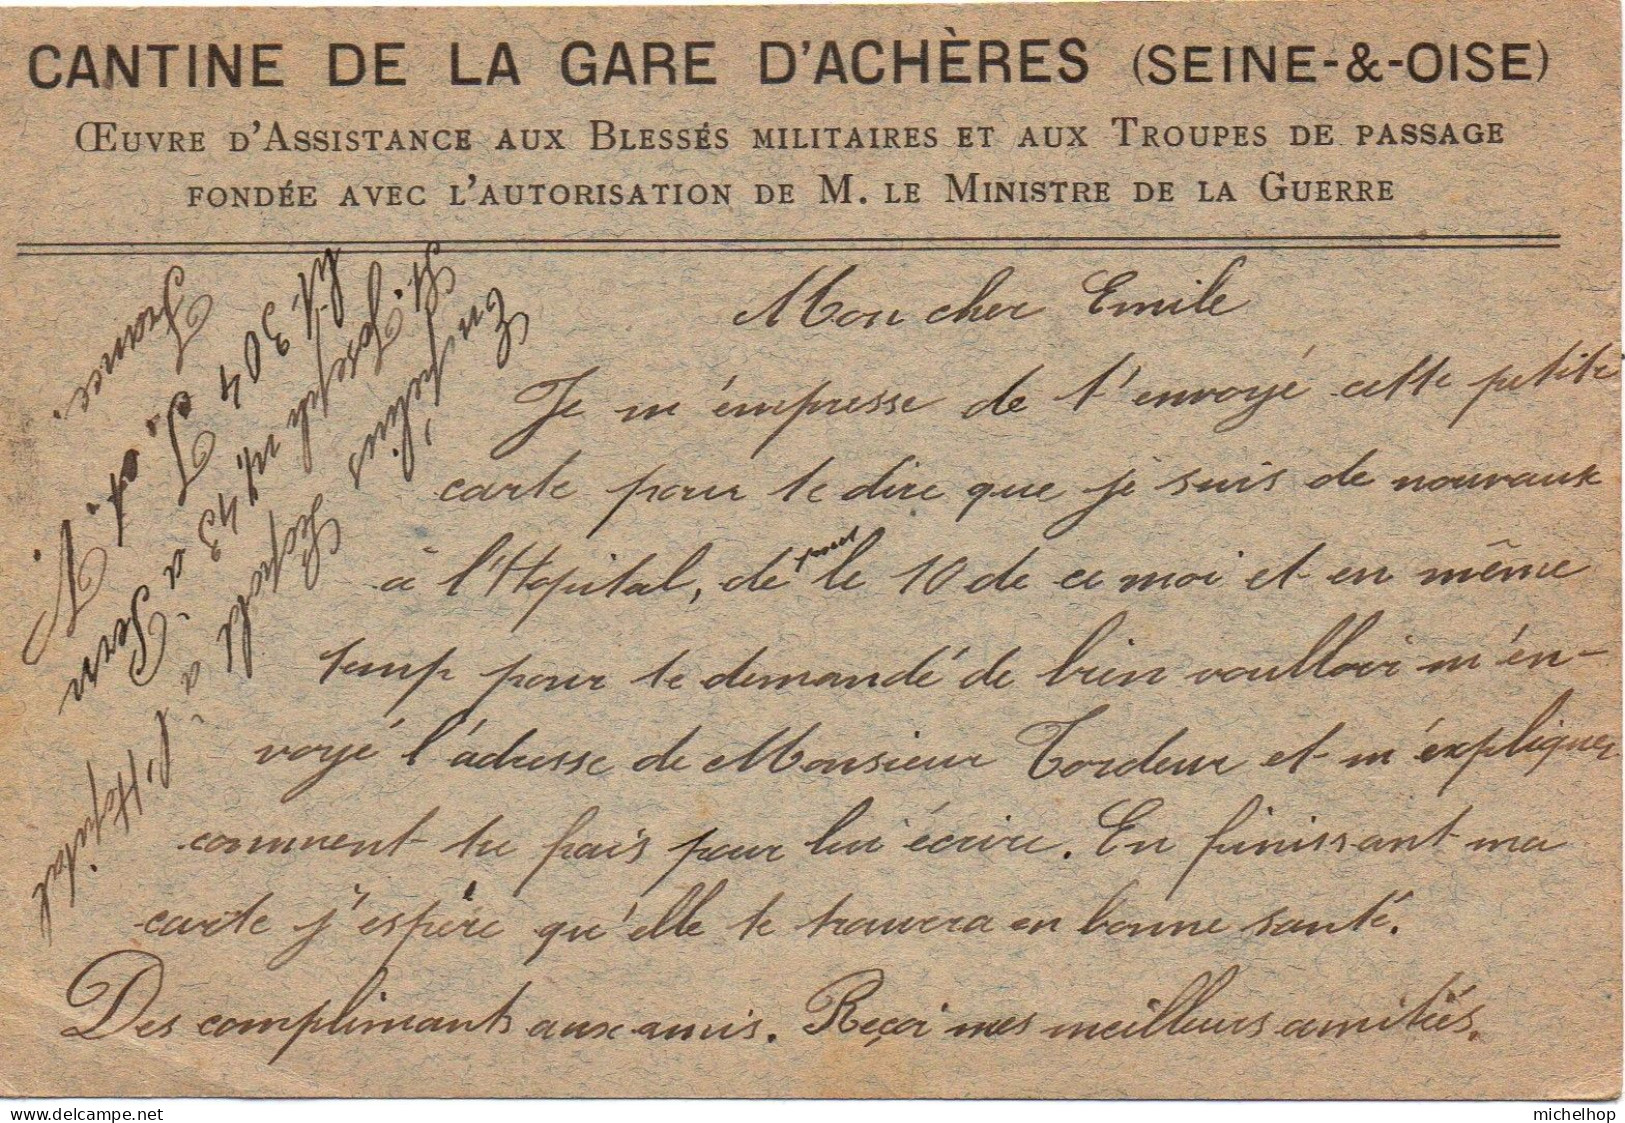 Carte Postale En Franchise Expédiée Par Un Militaire Belge Hospitalisé à St Pern - Repiquage Cantine Gare D'Achères - Armée Belge